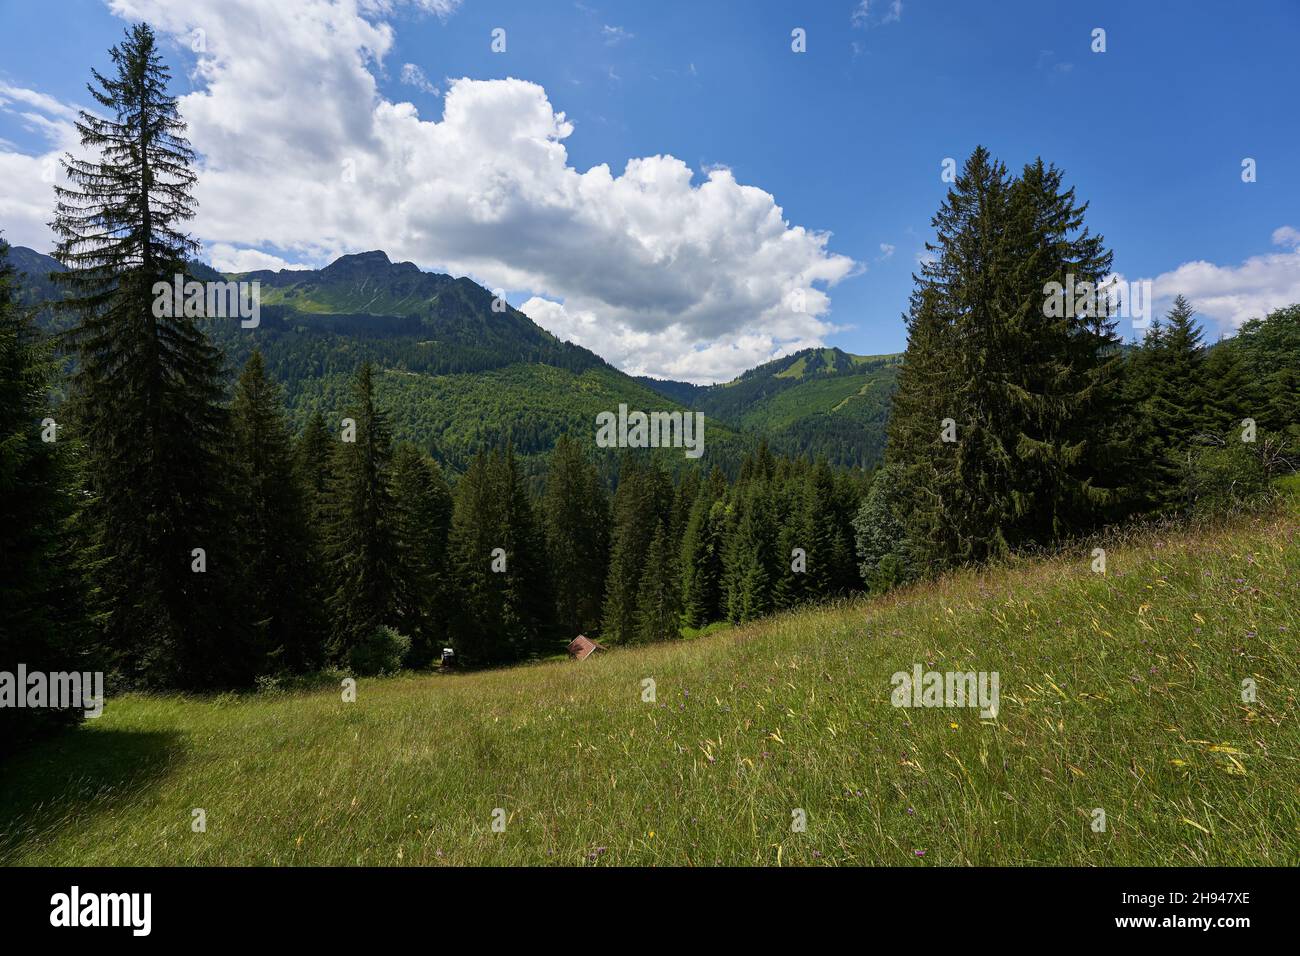 Tannheimer testa di camoscio di montagna, sentiero con ciottoli luminosi conduce verso un alto landform, cielo blu con nuvole bianche. Baviera, Pfronten. Foto Stock